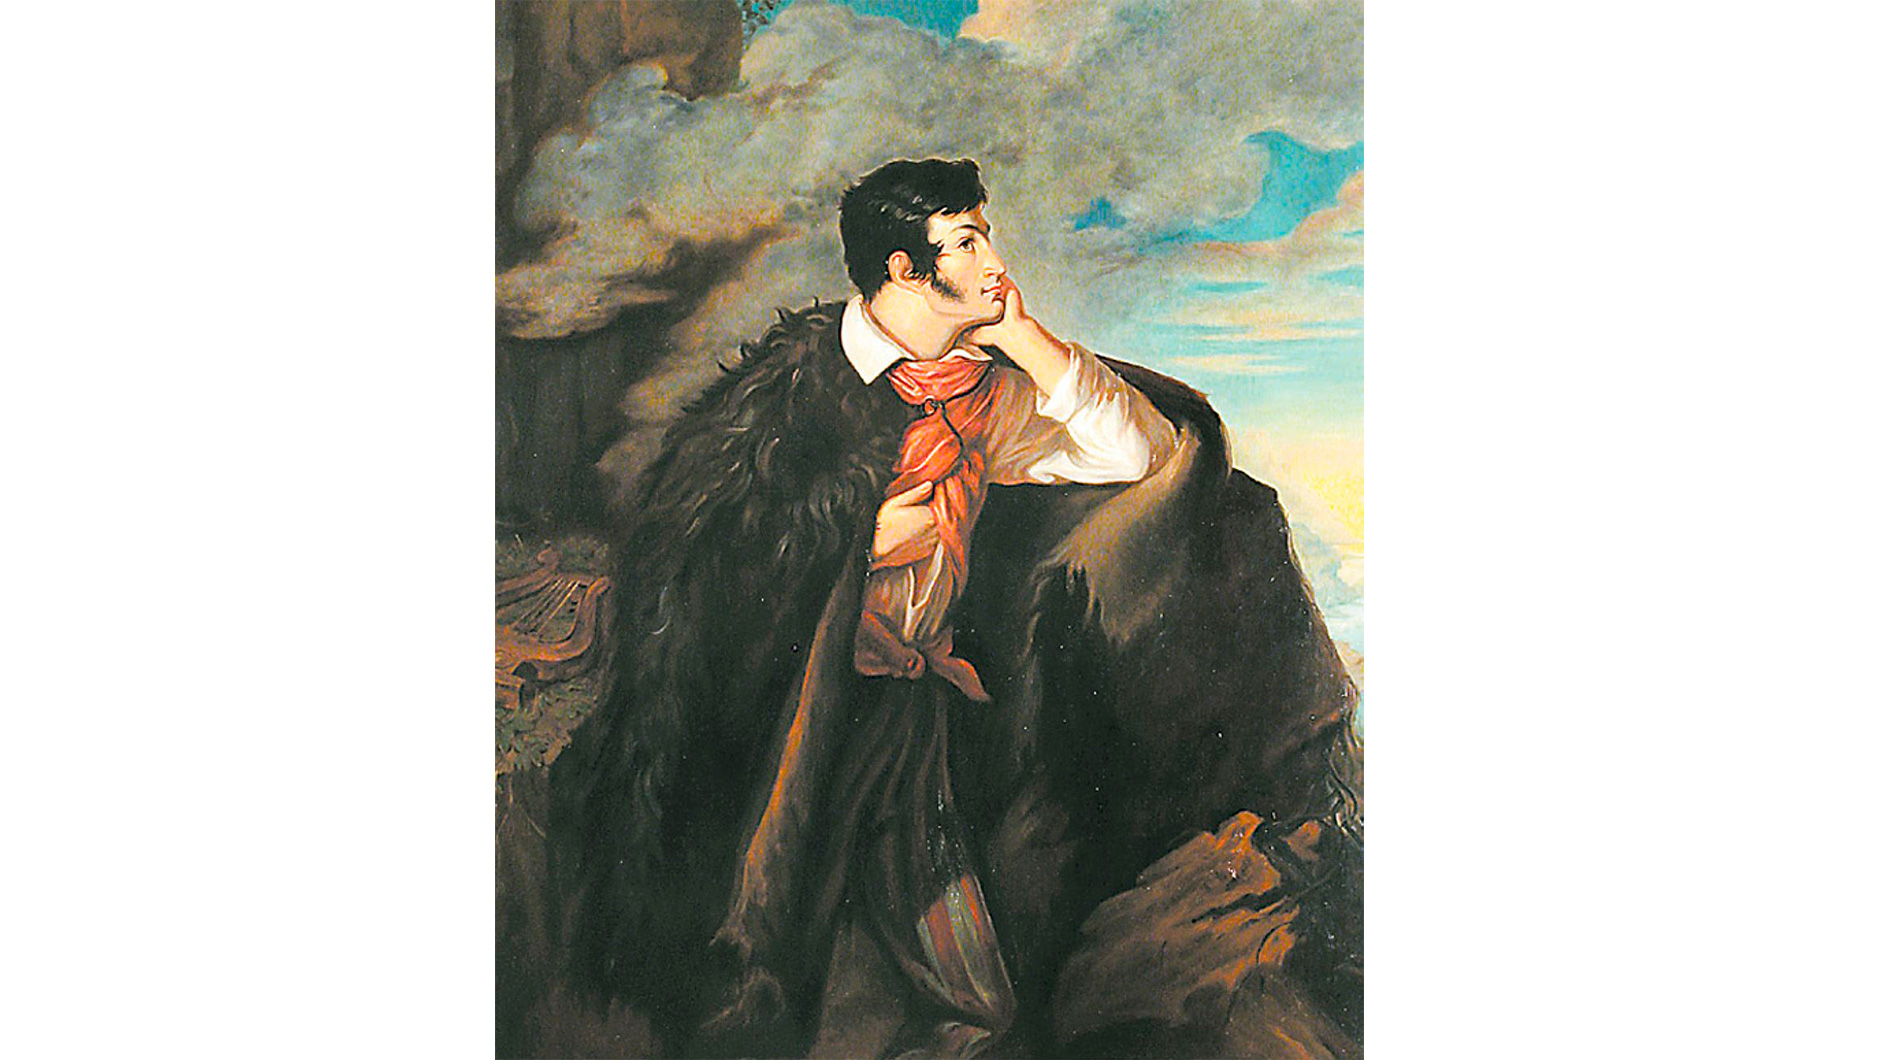 Валентий Ванькович. “Адам Мицкевич на скале Аю-Даг” (1827—1828)